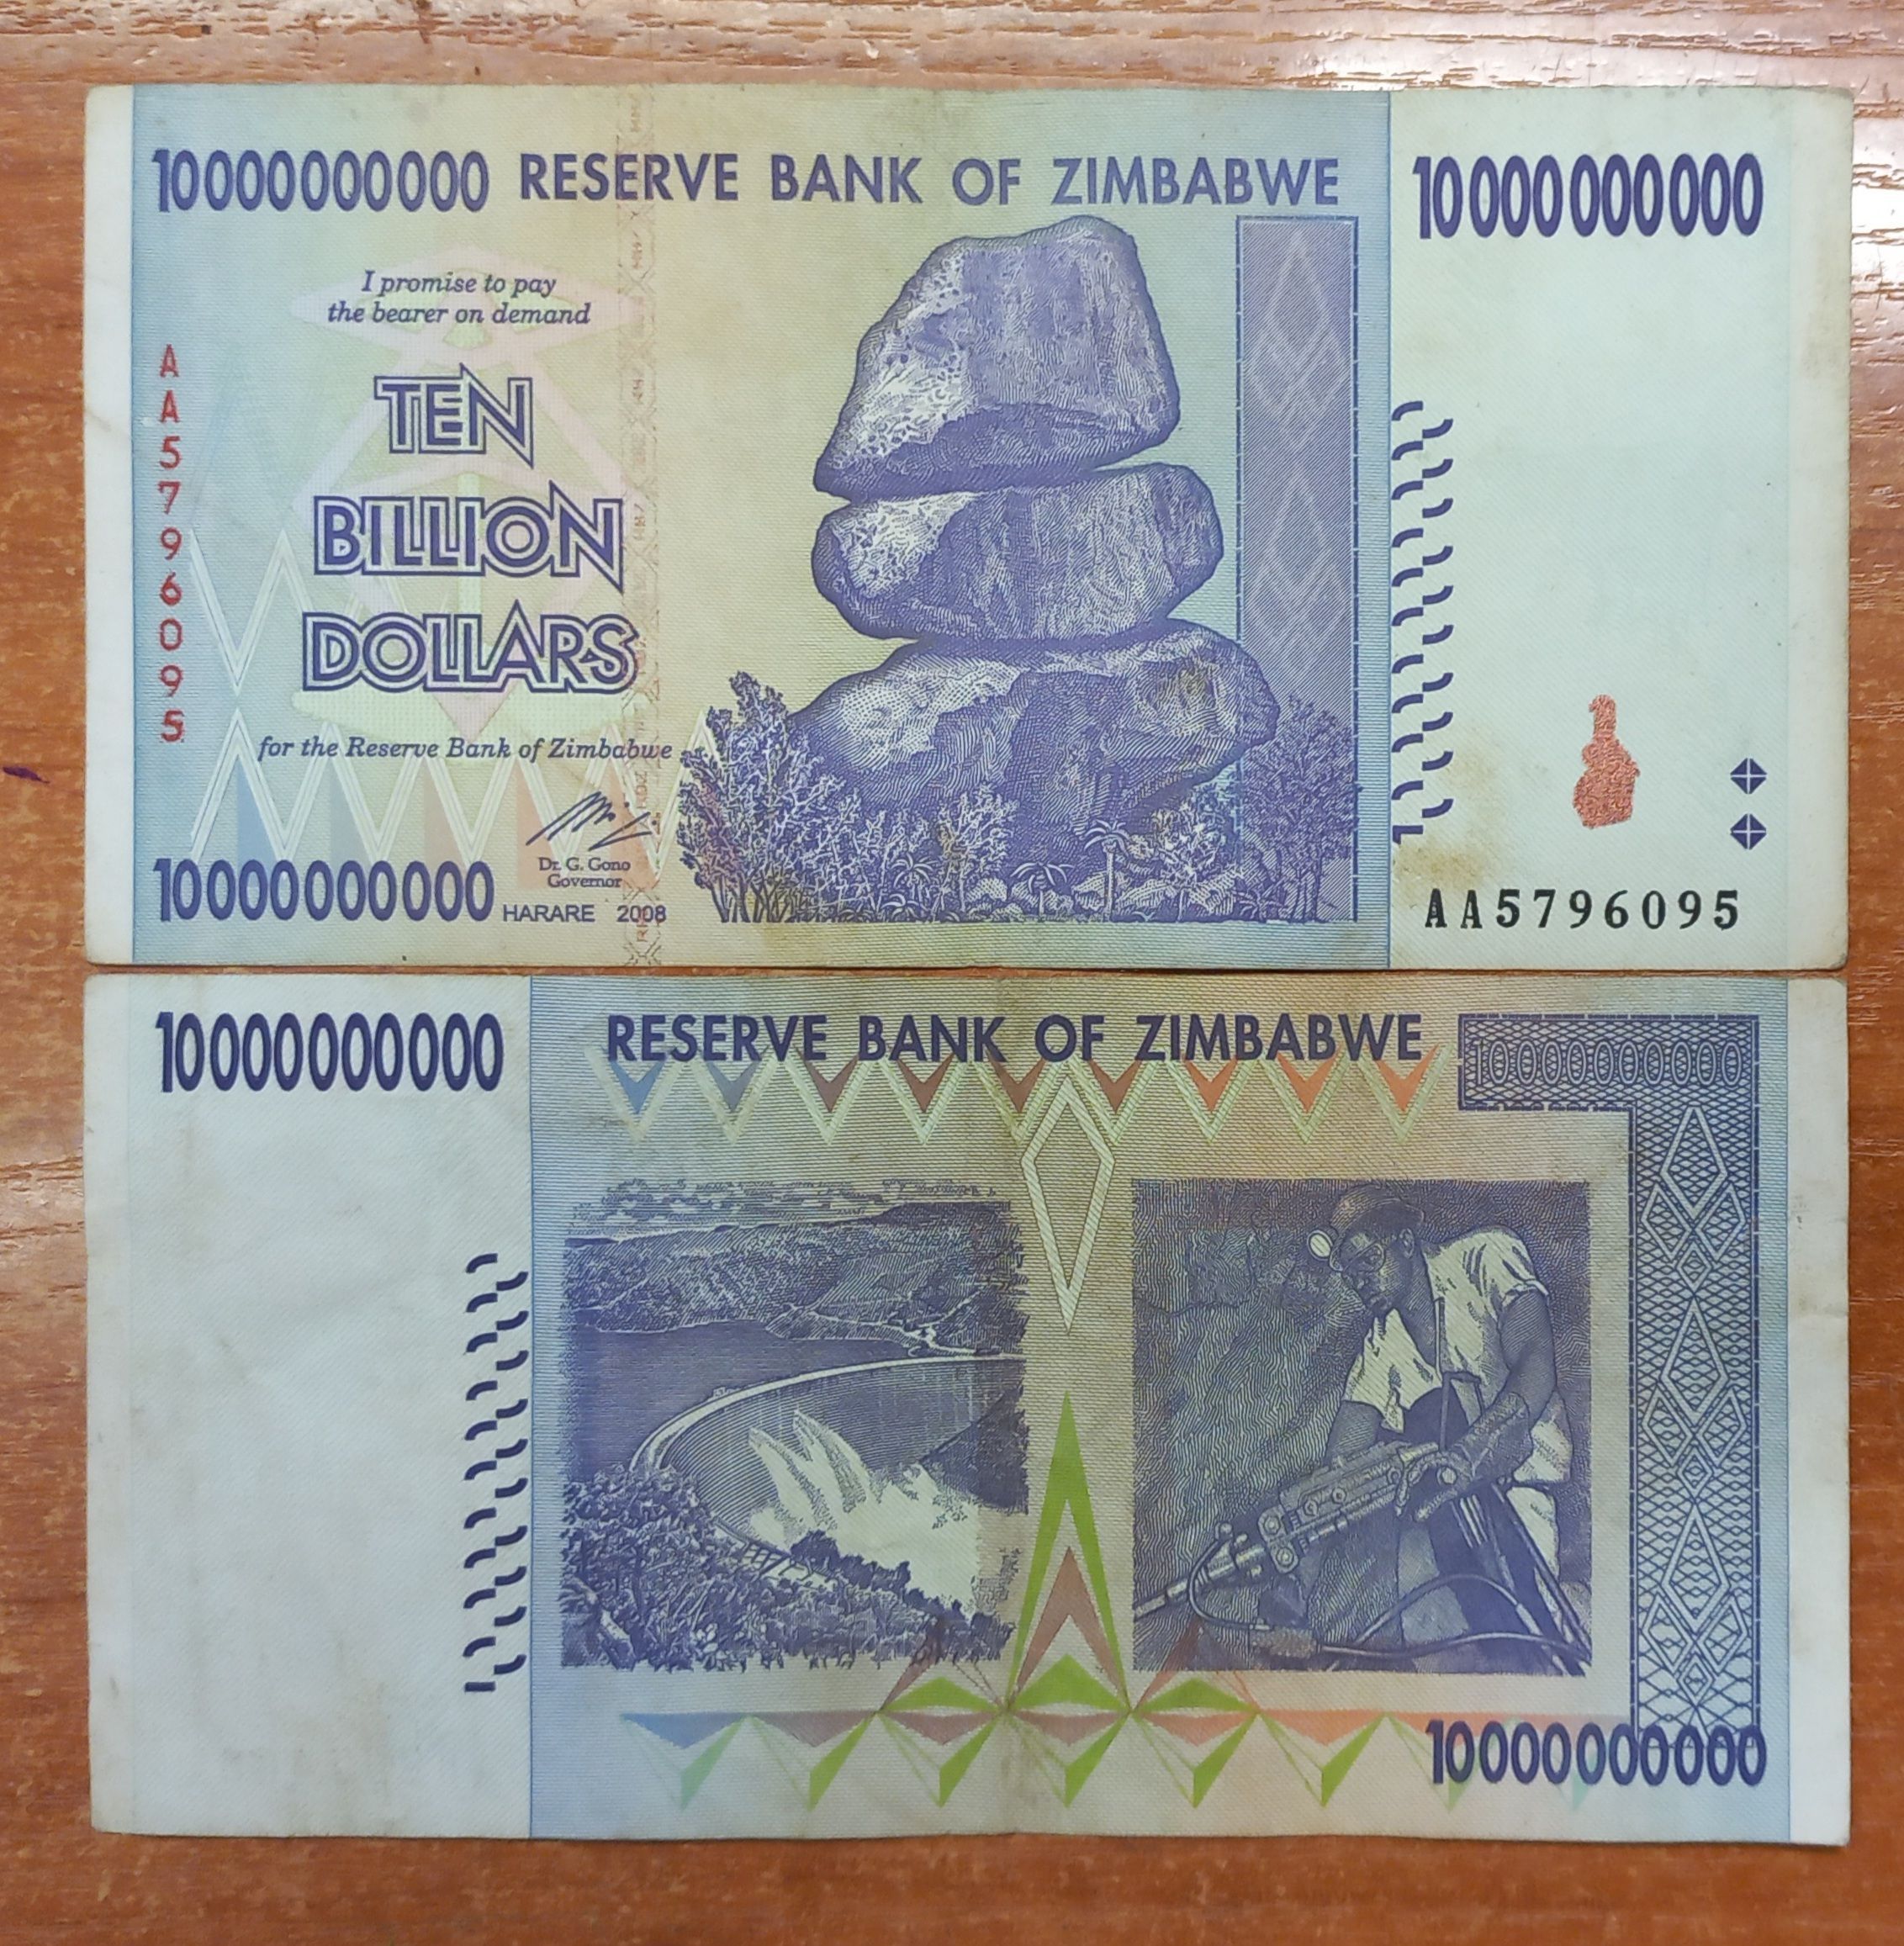 10000000000 долларов. Купюры Зимбабве. Купюры Зимбабве 2008 года. Зимбабвийский доллар купюры. 10 Триллионов зимбабвийских долларов.